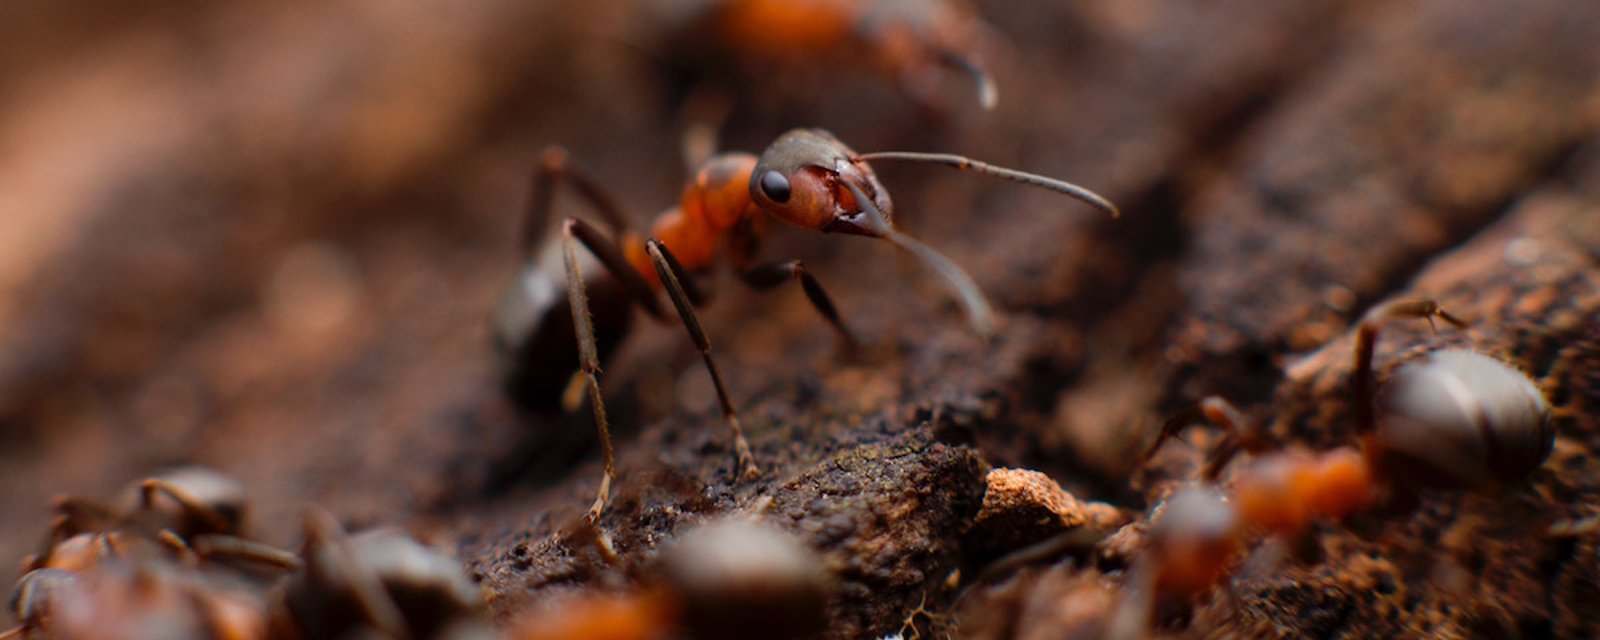 2 méthodes simples pour dire stop aux fourmis qui veulent vous envahir